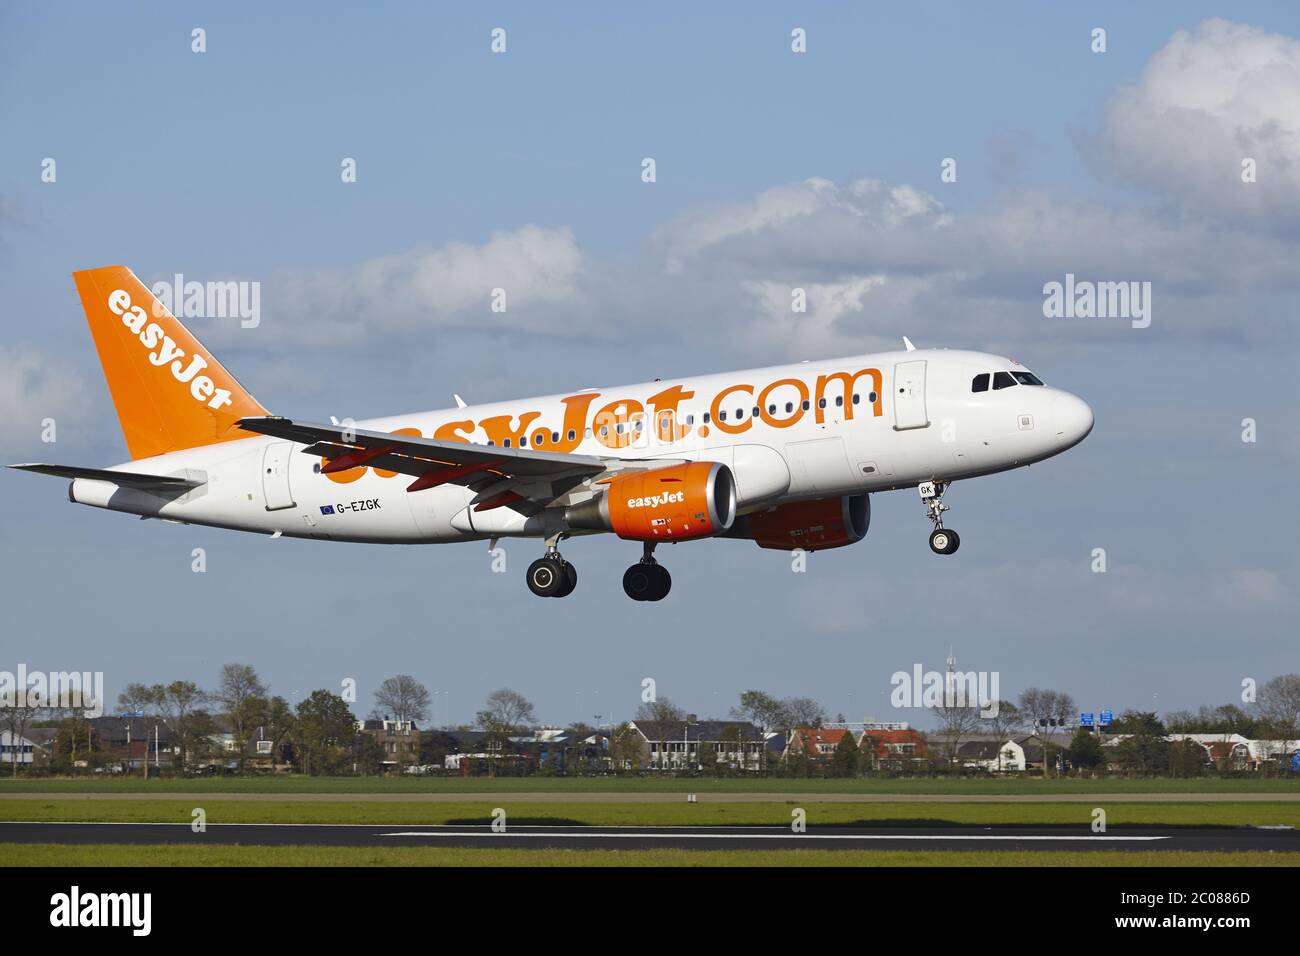 Aeroporto di Amsterdam Schiphol - EasyJet A319 atterra Foto Stock